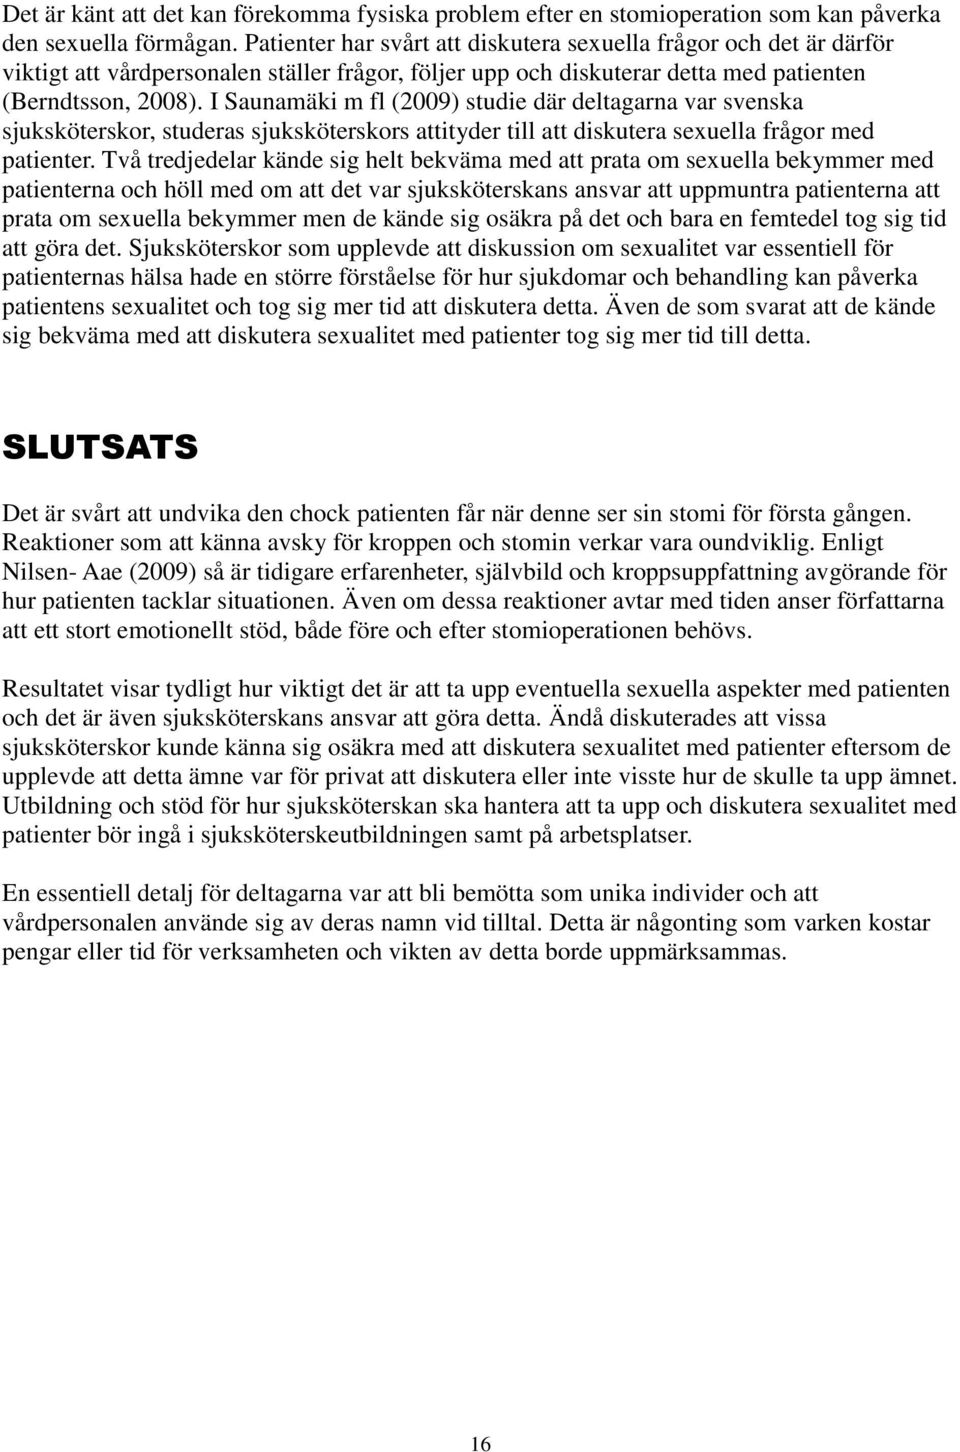 I Saunamäki m fl (2009) studie där deltagarna var svenska sjuksköterskor, studeras sjuksköterskors attityder till att diskutera sexuella frågor med patienter.